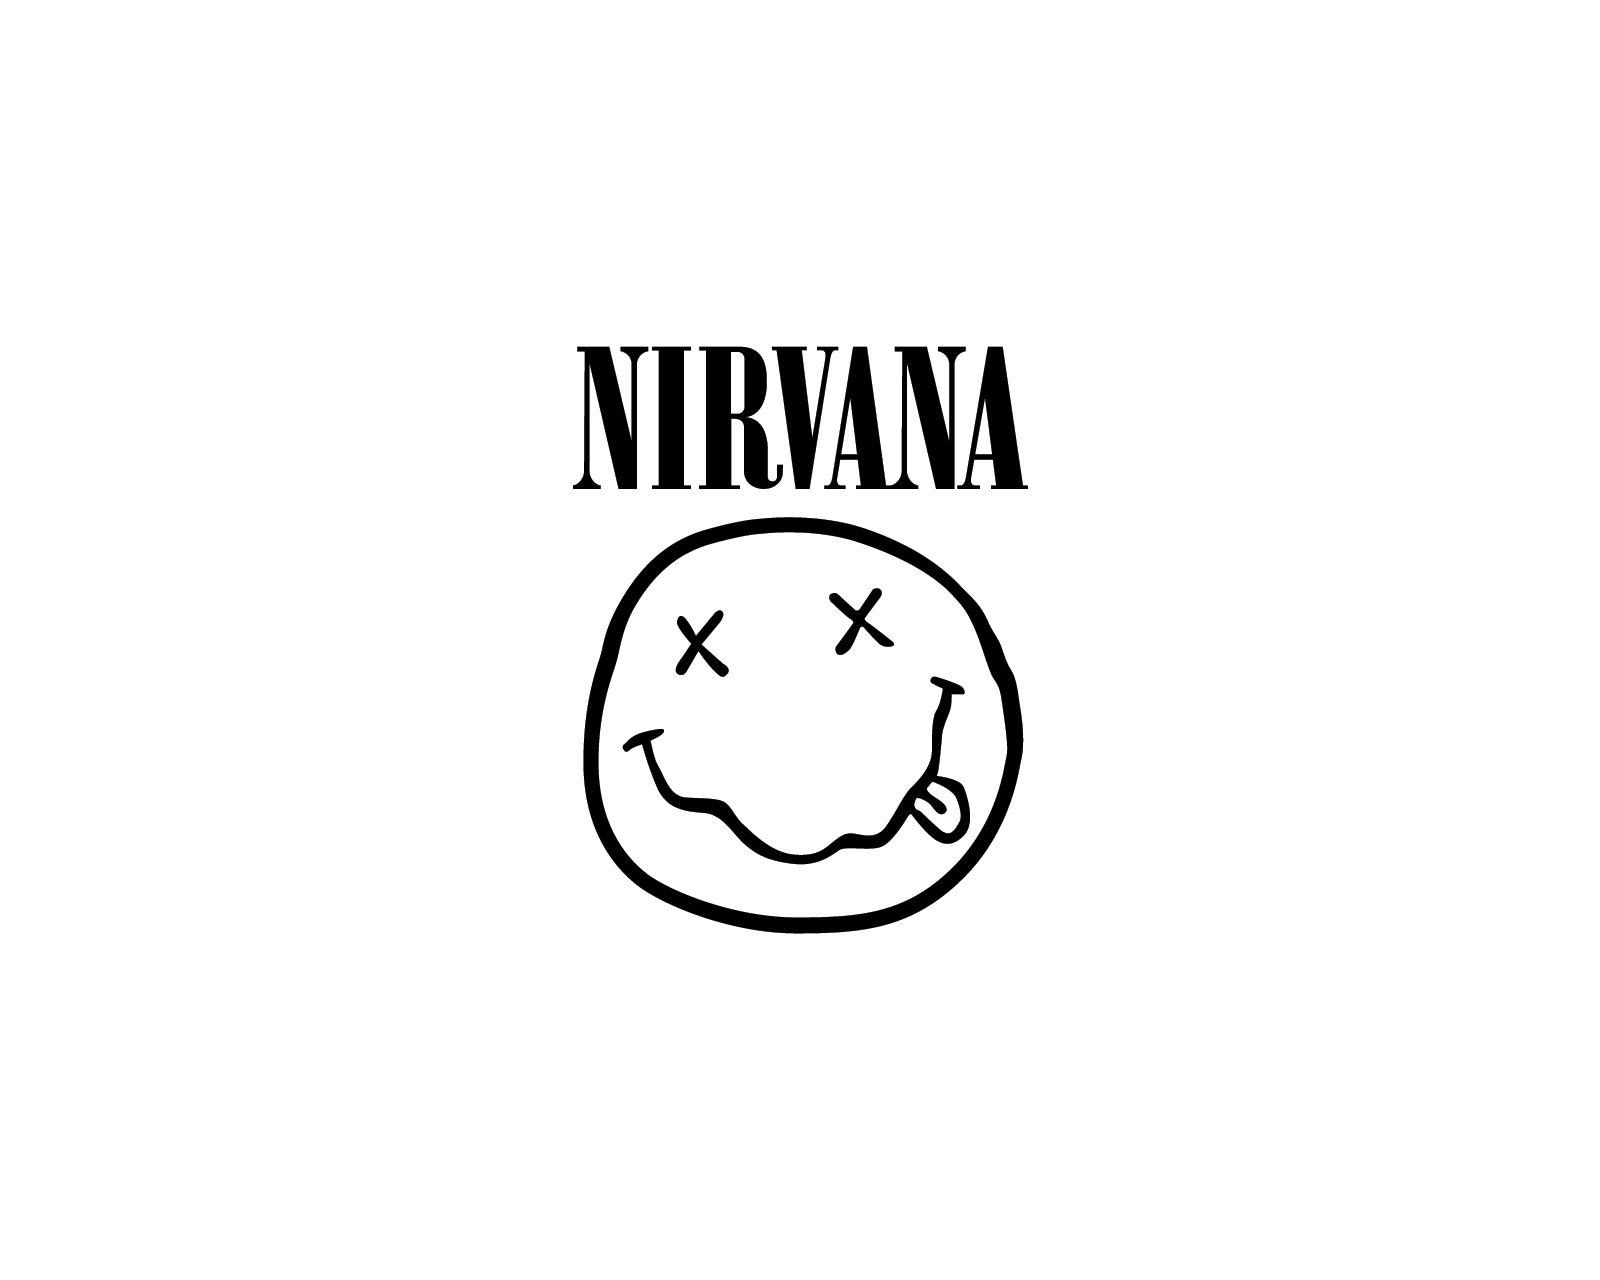 Nirvana Rock Band Logo - Grunge. Band logos band logos, metal bands logos, punk bands